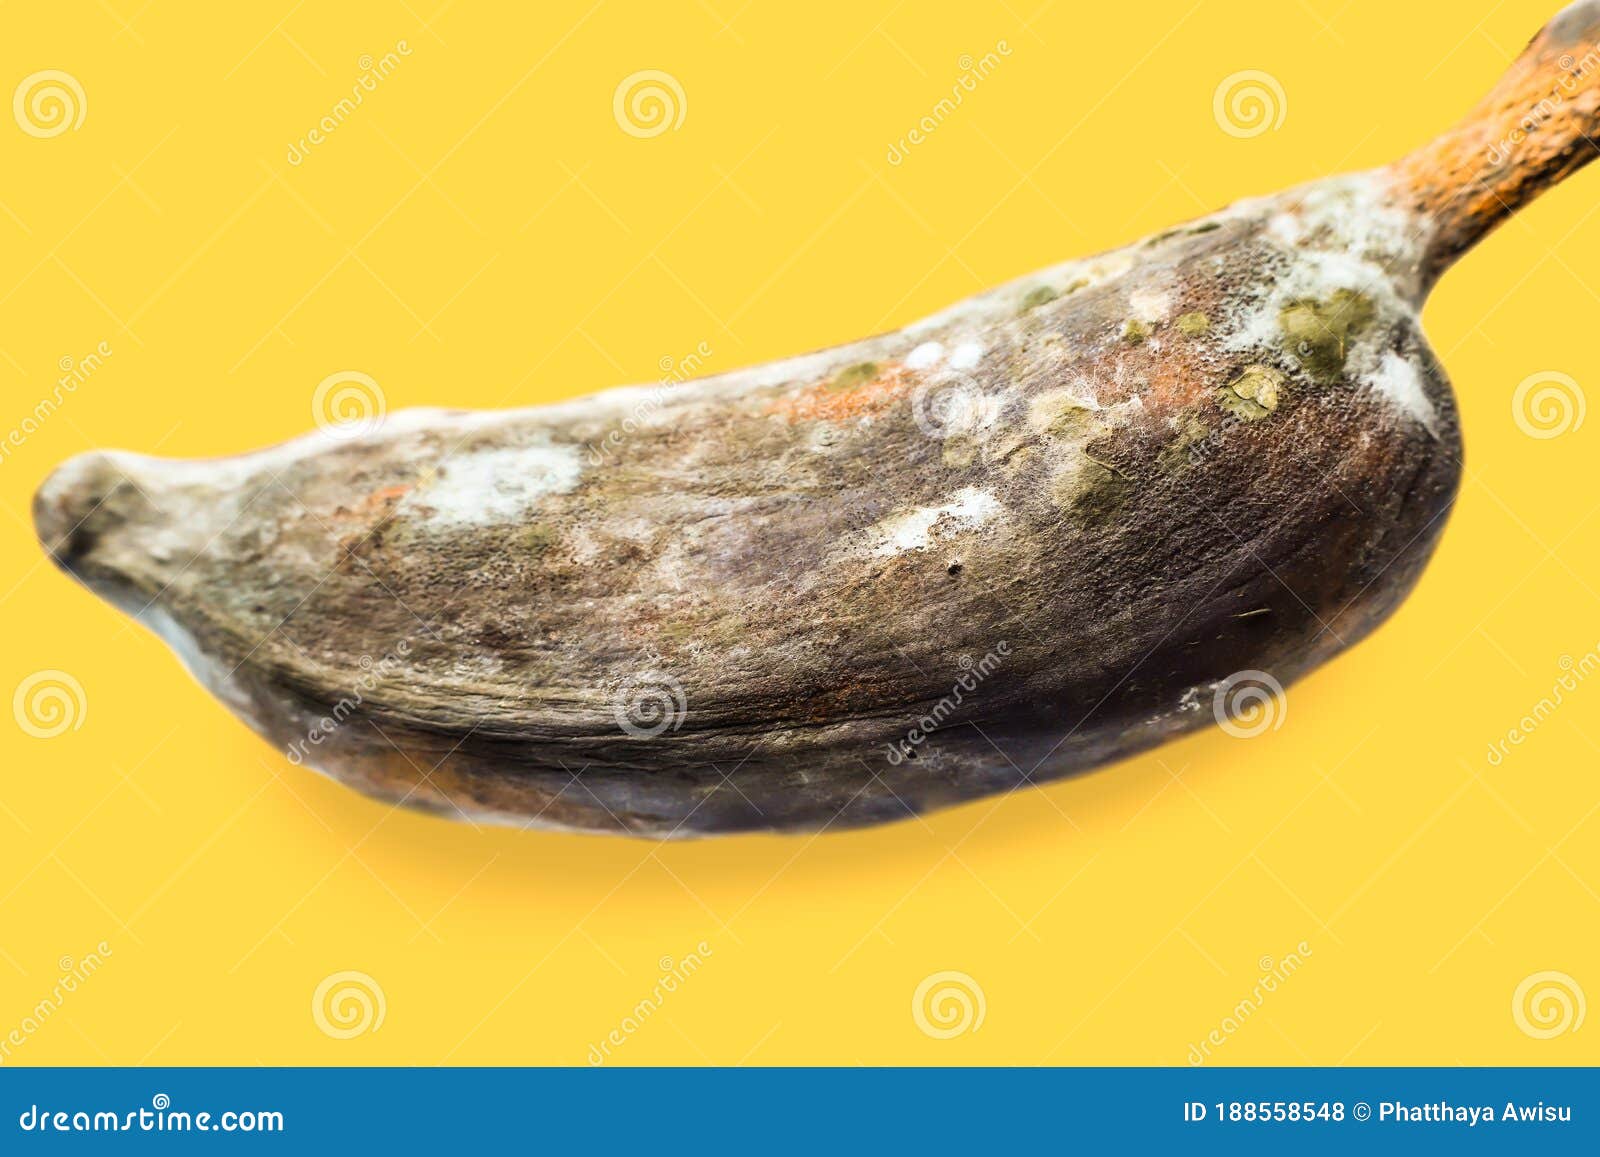 成堆的腐烂或丢弃在地上的香蕉果实 库存照片. 图片 包括有 真菌, 朽烂, 腐败, 绿色, 太熟, 自然 - 209449656